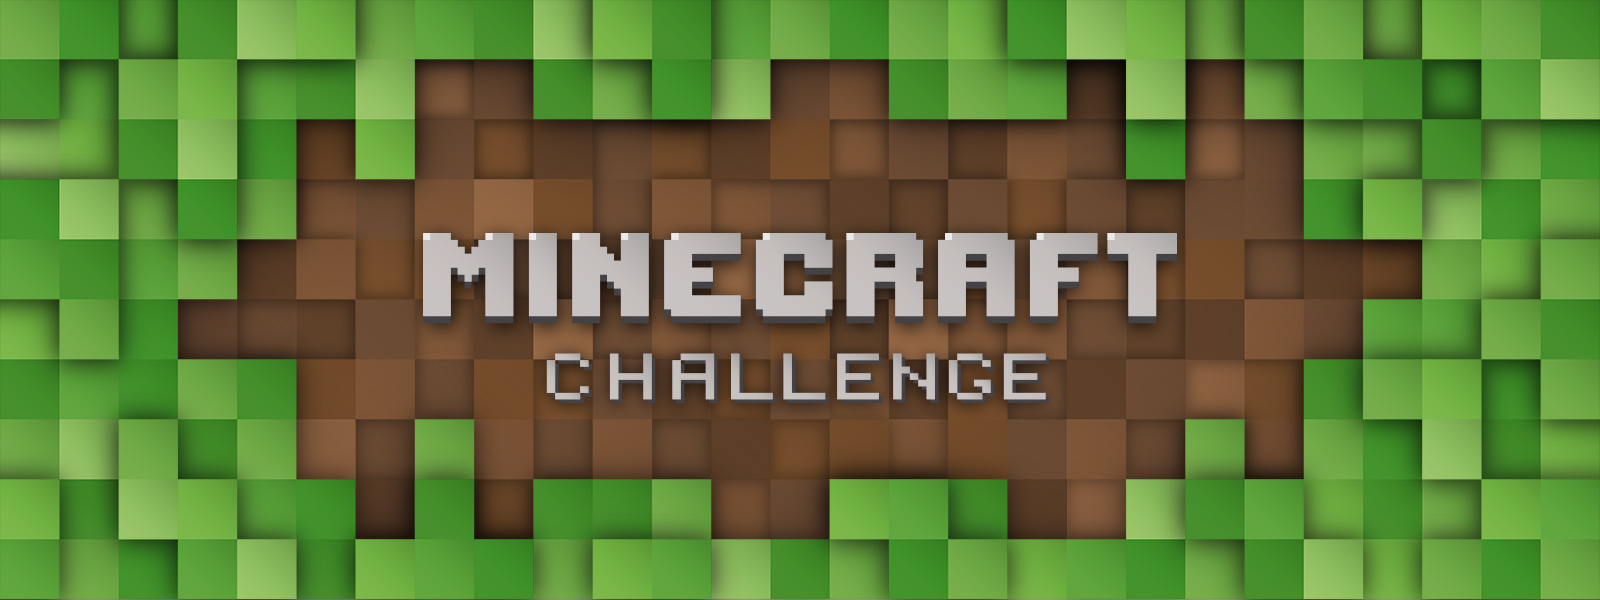 Instructables Minecraft Challenge 2018